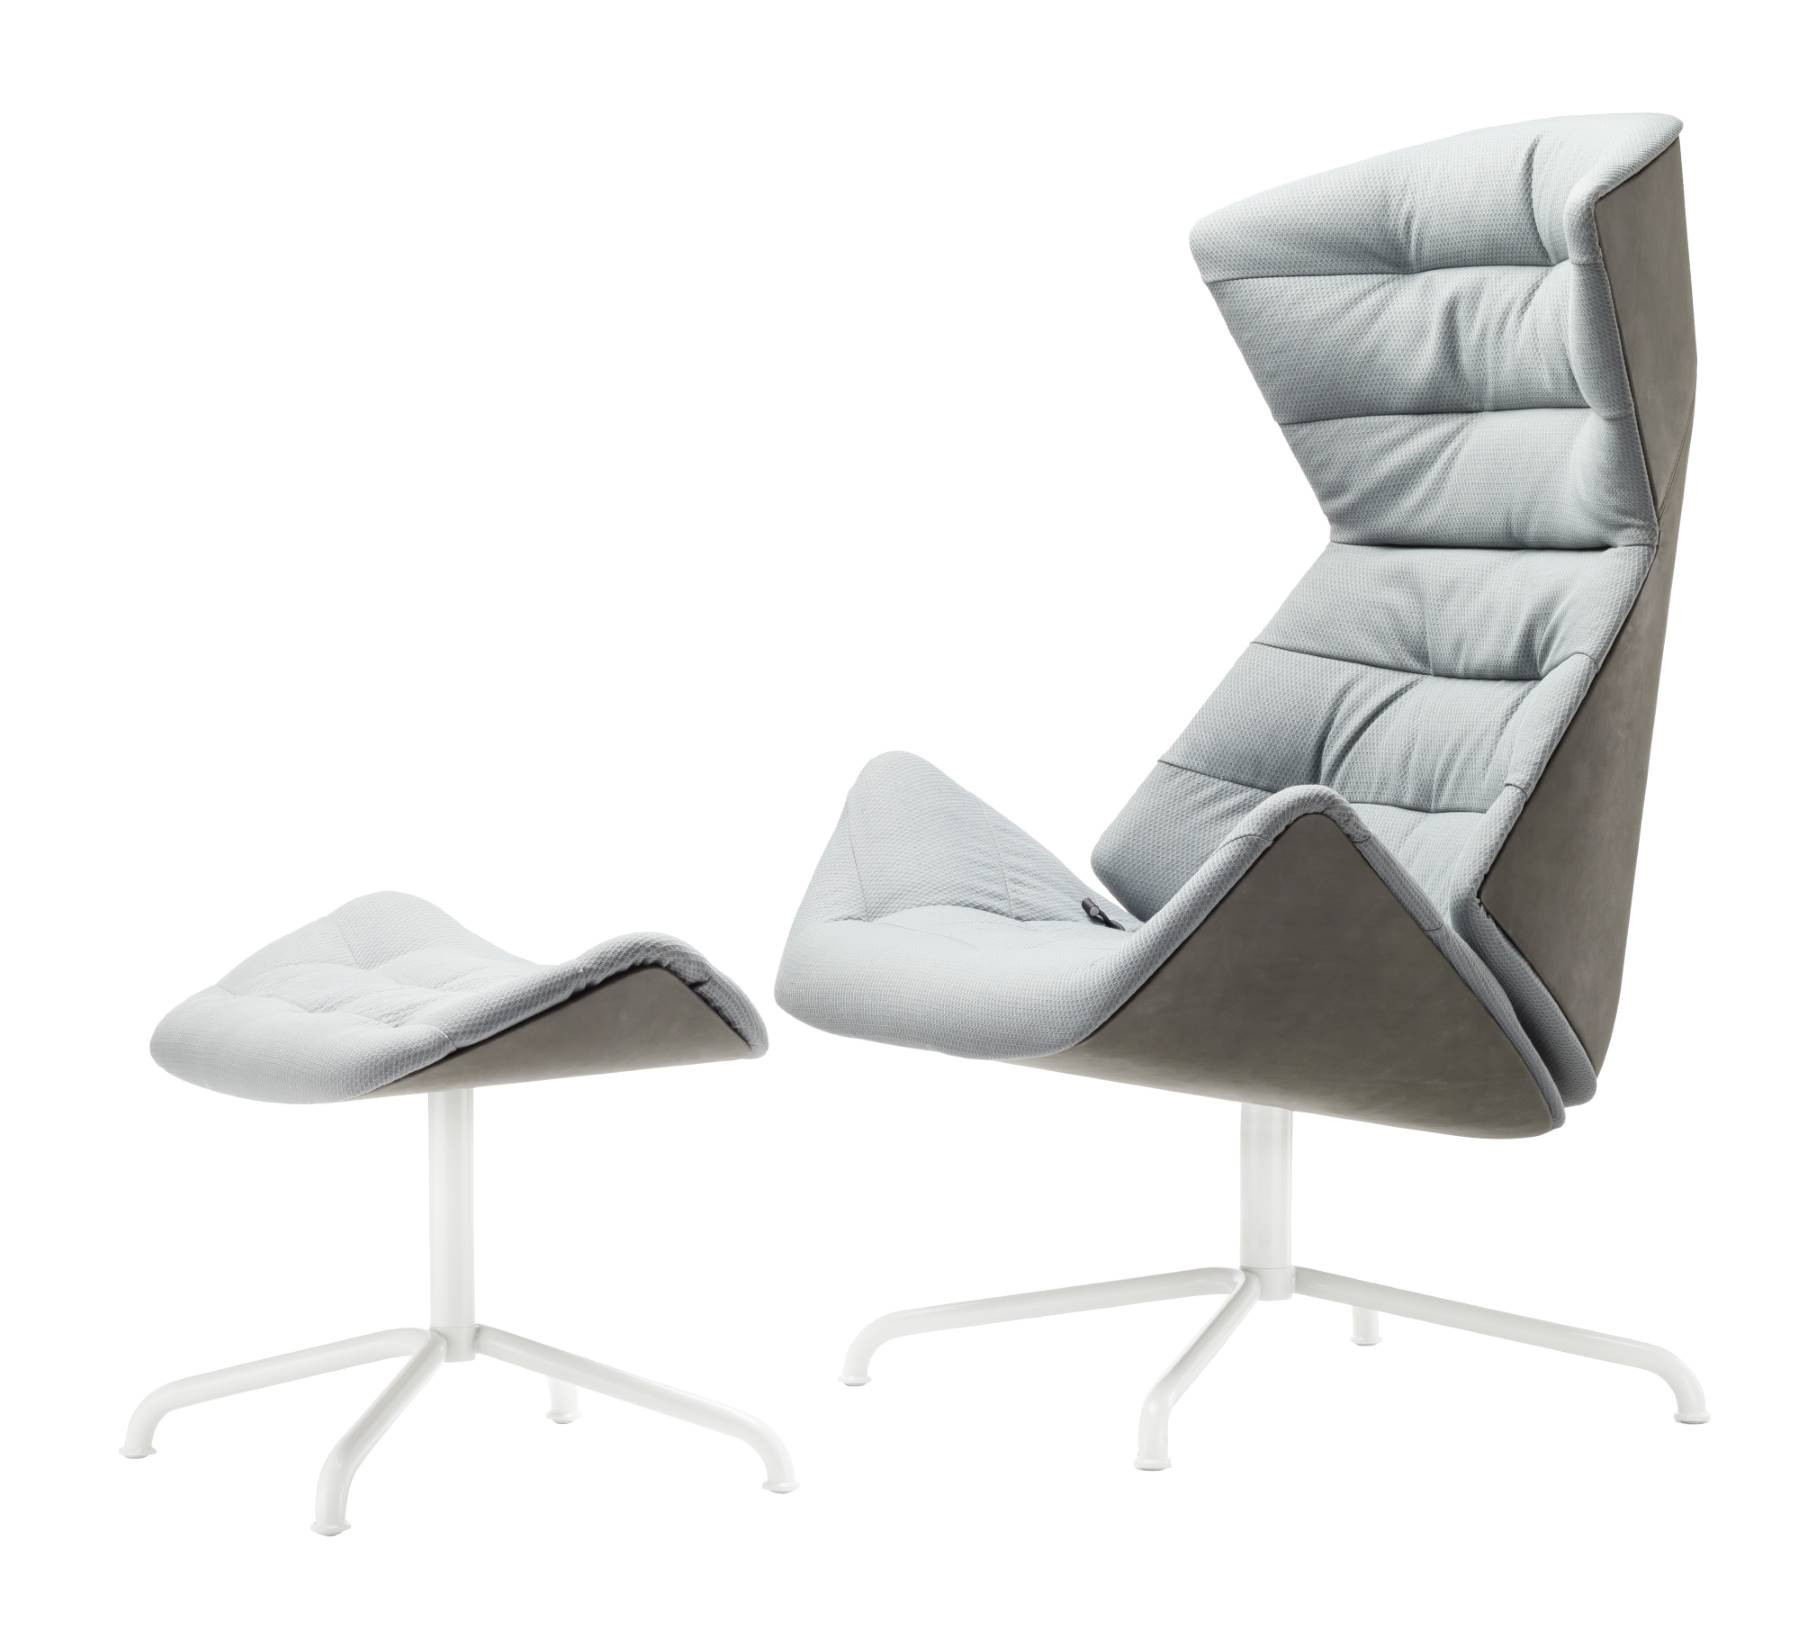 Sessel Design
 808 Lounge Sessel Thonet einrichten design